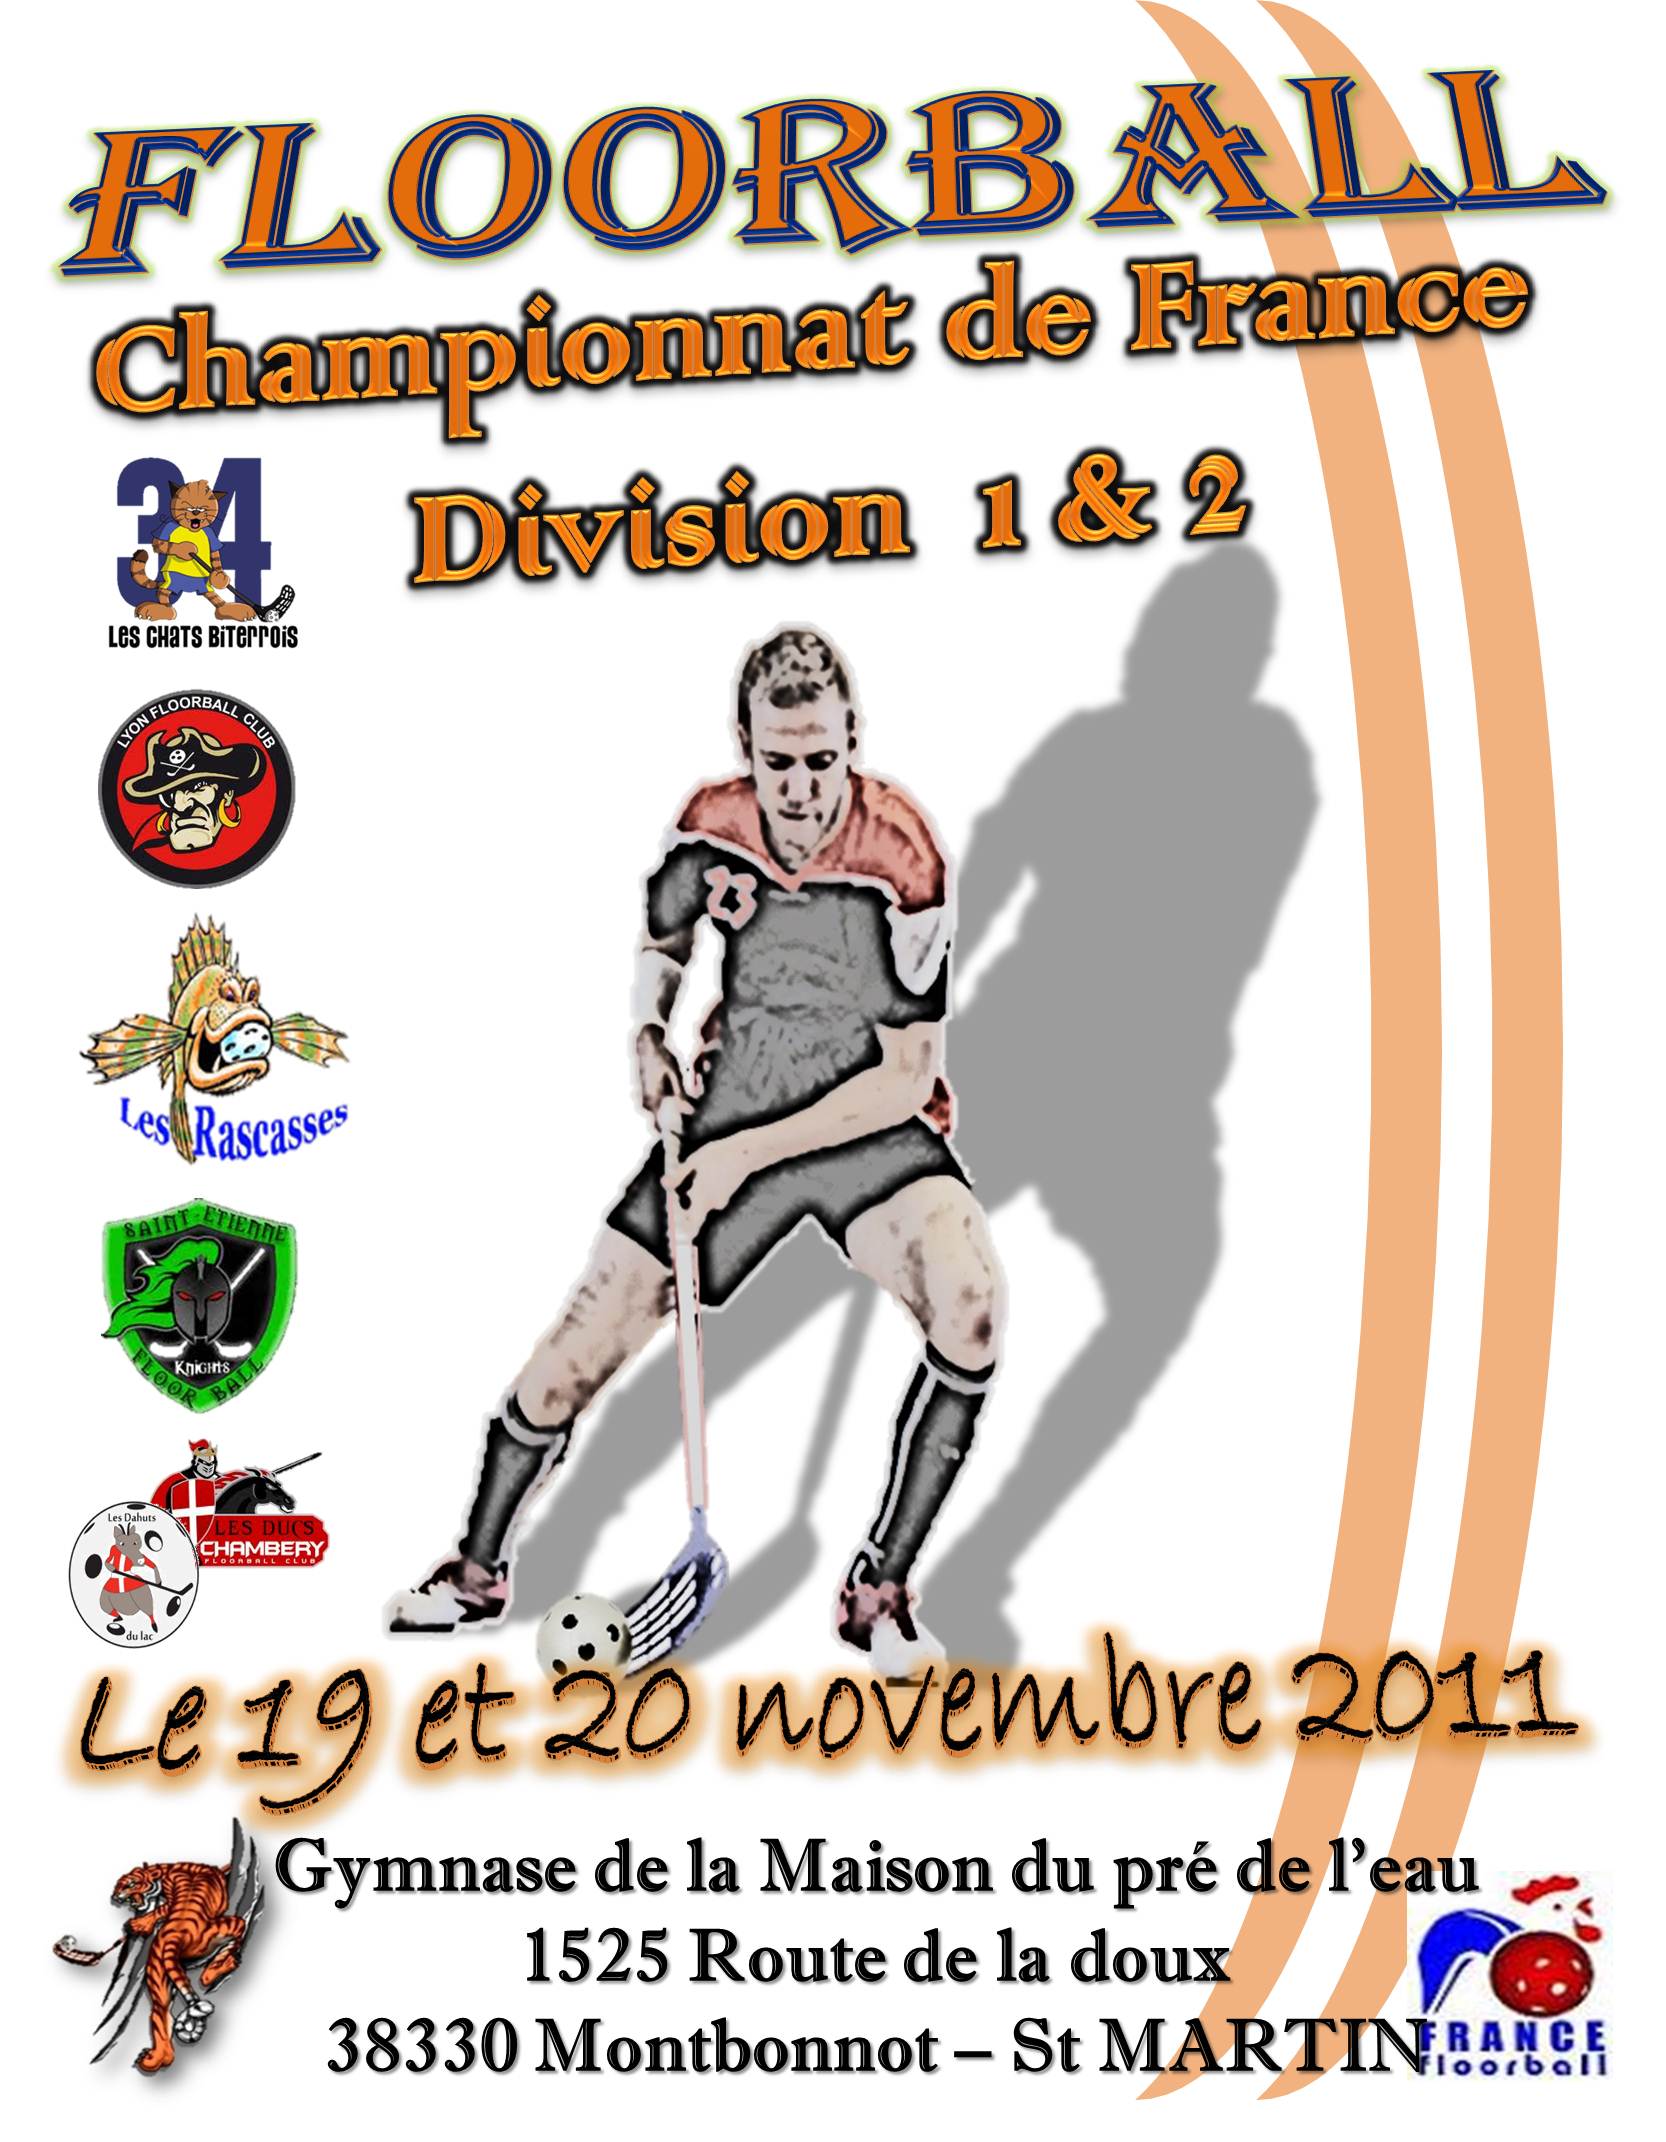 Le Championnat de France de Floorball passe par Montbonnot